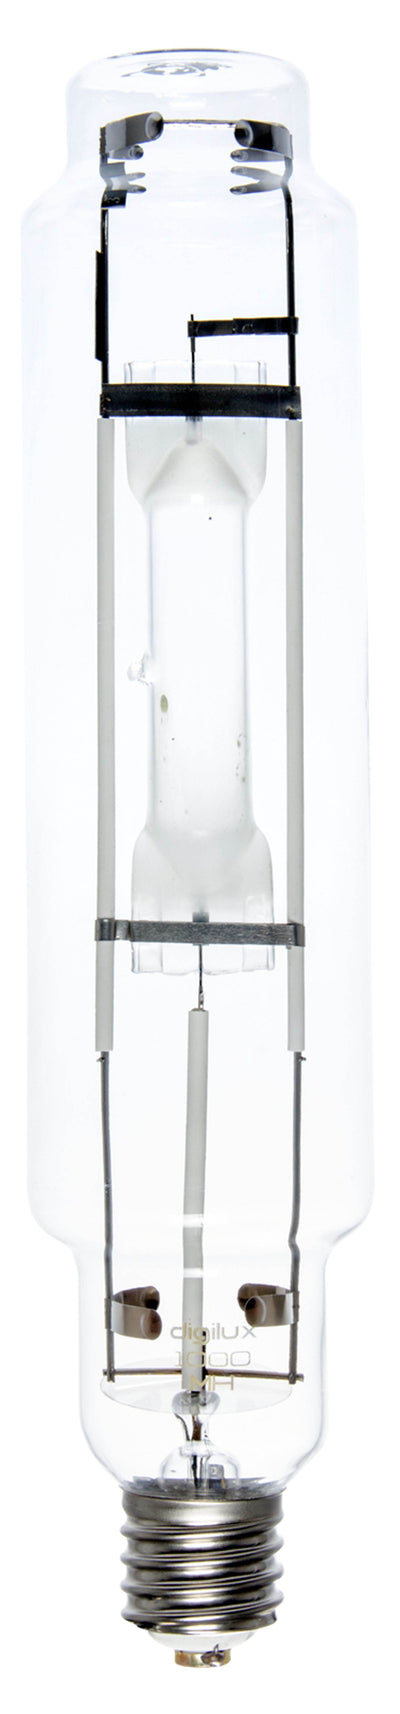 (3) Digilux DX1000 MH 1000W Digital Grow Light Bulbs Metal Halide Hydroponics - VMInnovations